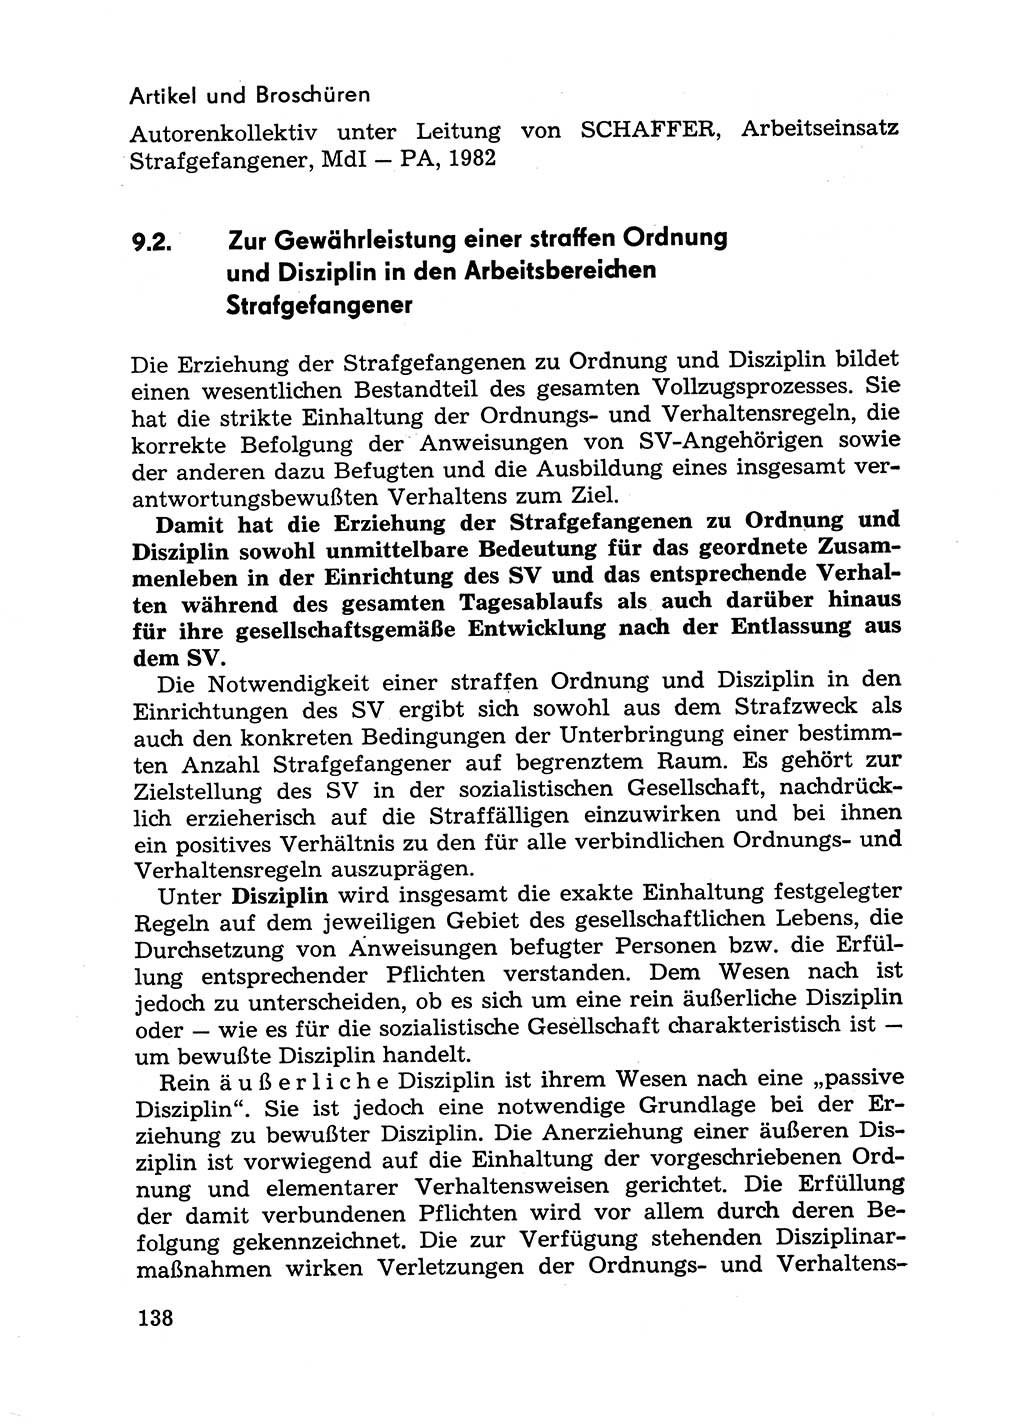 Handbuch für Betriebsangehörige, Abteilung Strafvollzug (SV) [Ministerium des Innern (MdI) Deutsche Demokratische Republik (DDR)] 1981, Seite 138 (Hb. BA Abt. SV MdI DDR 1981, S. 138)